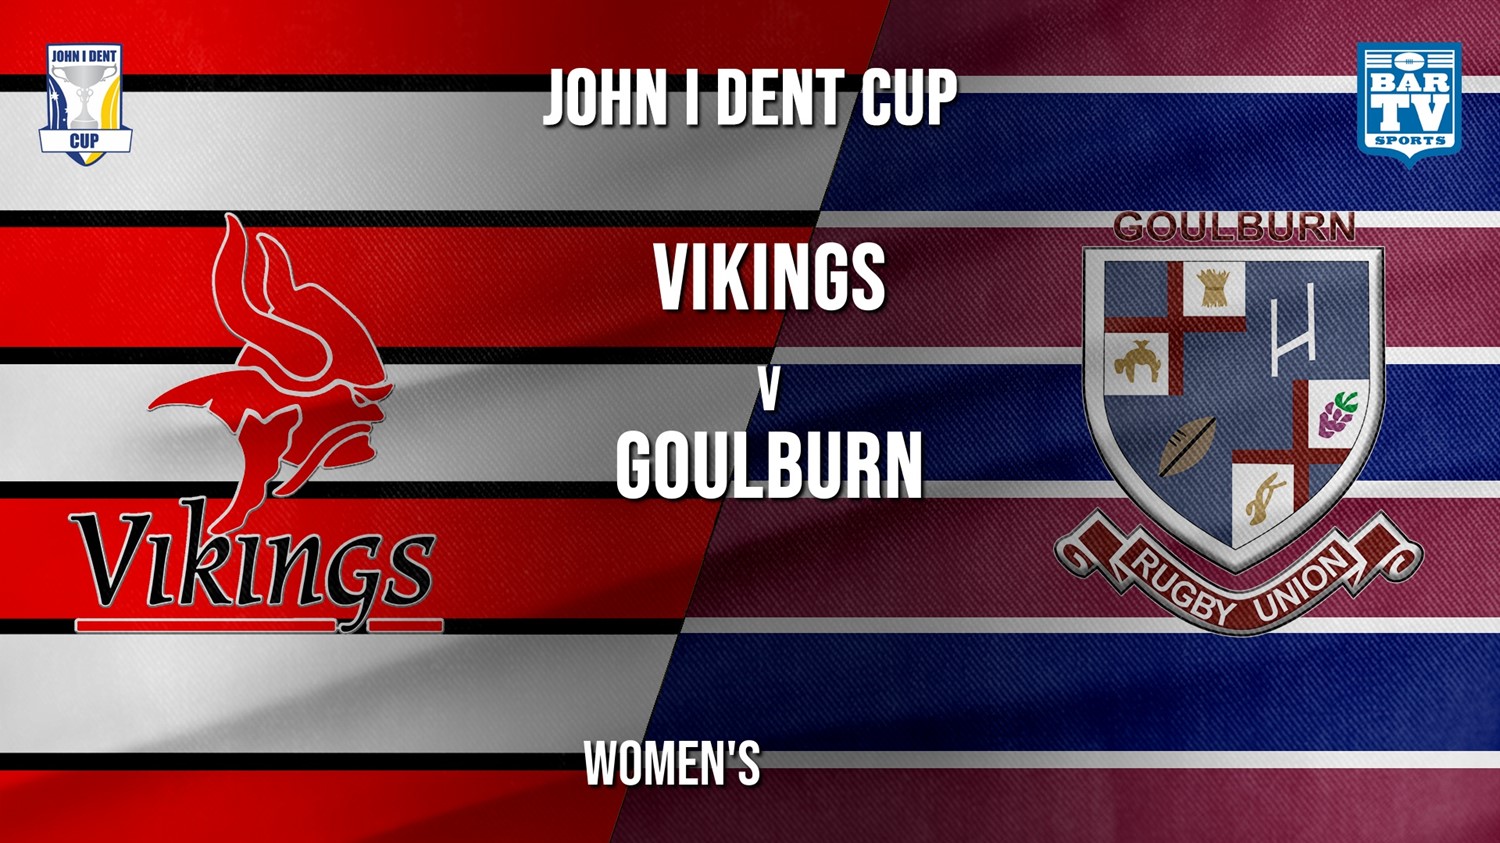 John I Dent Women's - Tuggeranong Vikings v Goulburn Minigame Slate Image